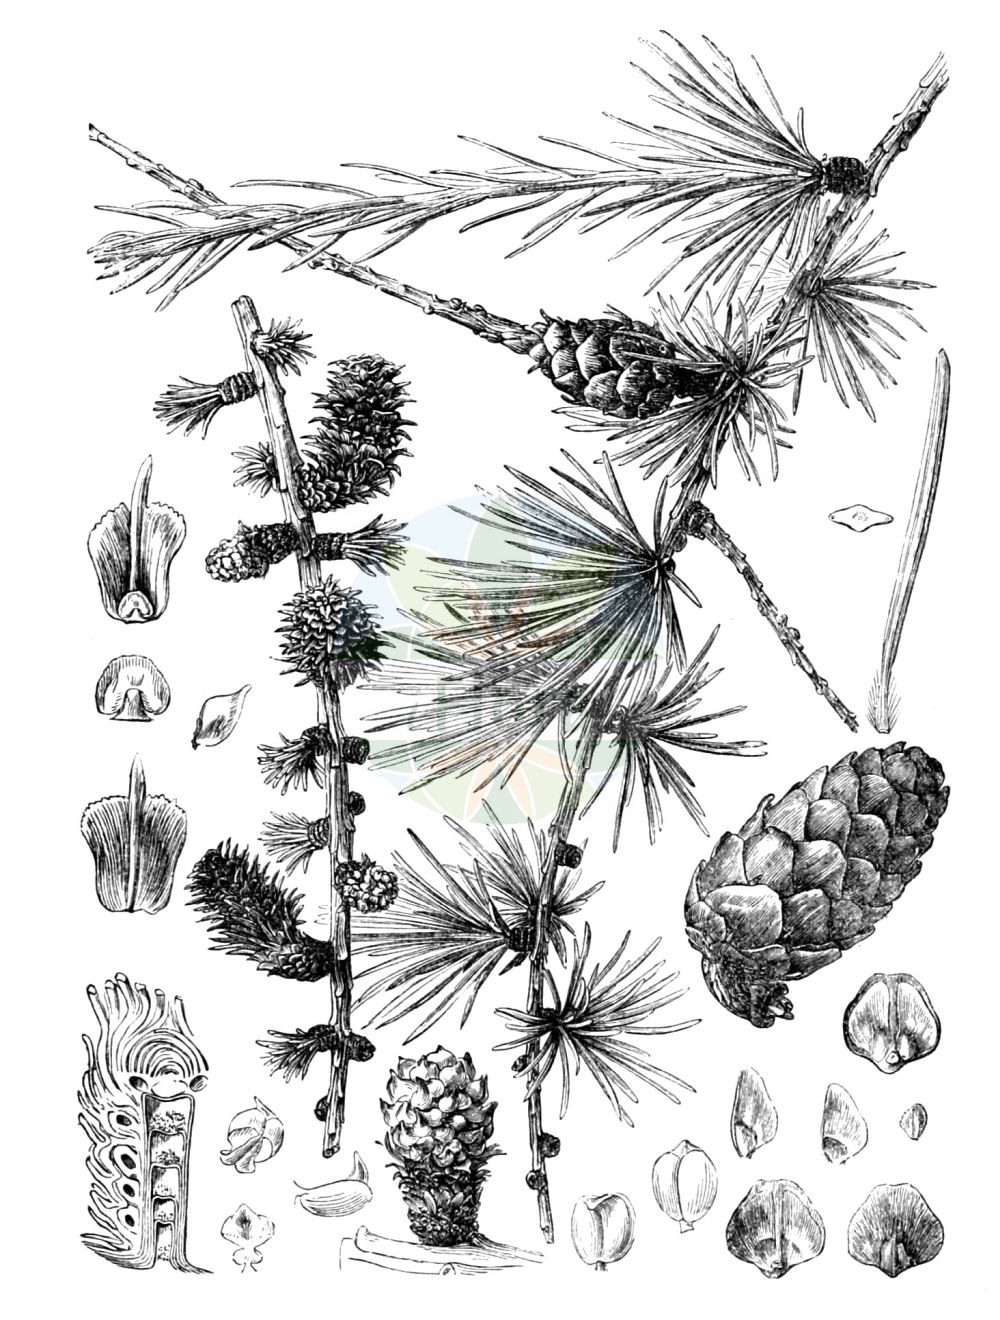 Historische Abbildung von Larix decidua (Europäische Lärche - European Larch). Das Bild zeigt Blatt, Bluete, Frucht und Same. ---- Historical Drawing of Larix decidua (Europäische Lärche - European Larch). The image is showing leaf, flower, fruit and seed.(Larix decidua,Europäische Lärche,European Larch,Larix decidua,Larix europaea,Pinus larix,Europaeische Laerche,European Larch,Common Larch,Larch,White Larch,Larix,Lärche,Larch,Pinaceae,Kieferngewächse,Pine family,Blatt,Bluete,Frucht,Same,leaf,flower,fruit,seed,Gilg & Schumann (1900))